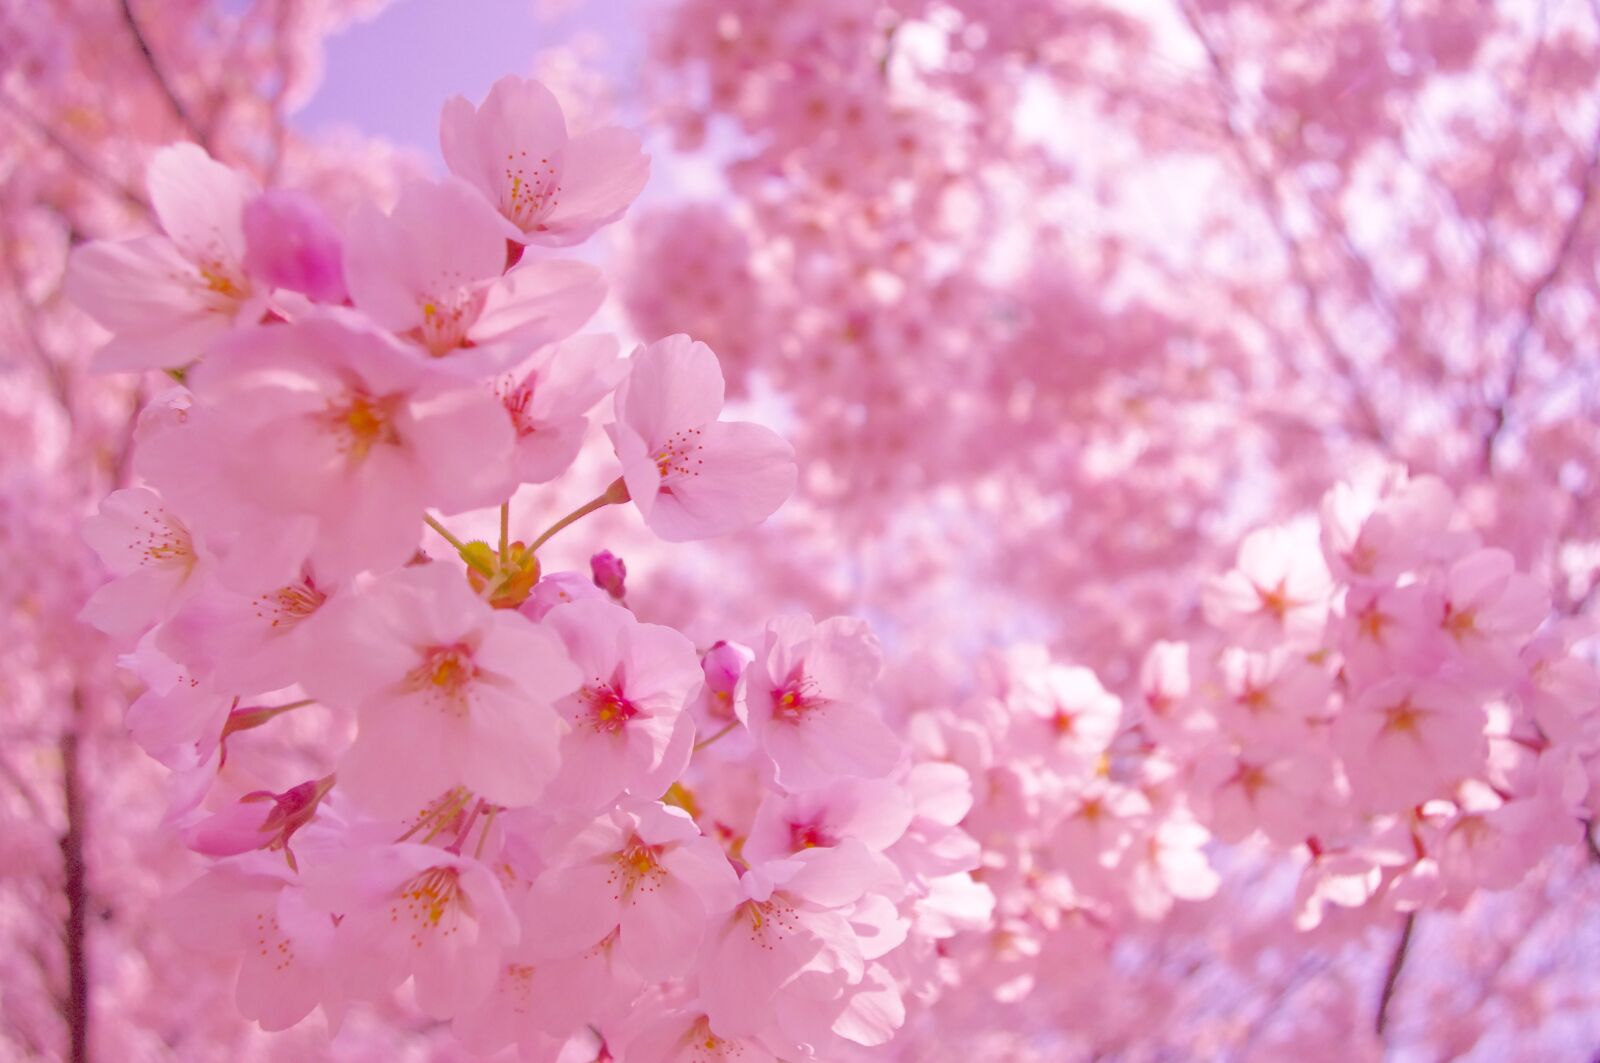 Pentax K-r sample photo. Sakura, flower, pink photography